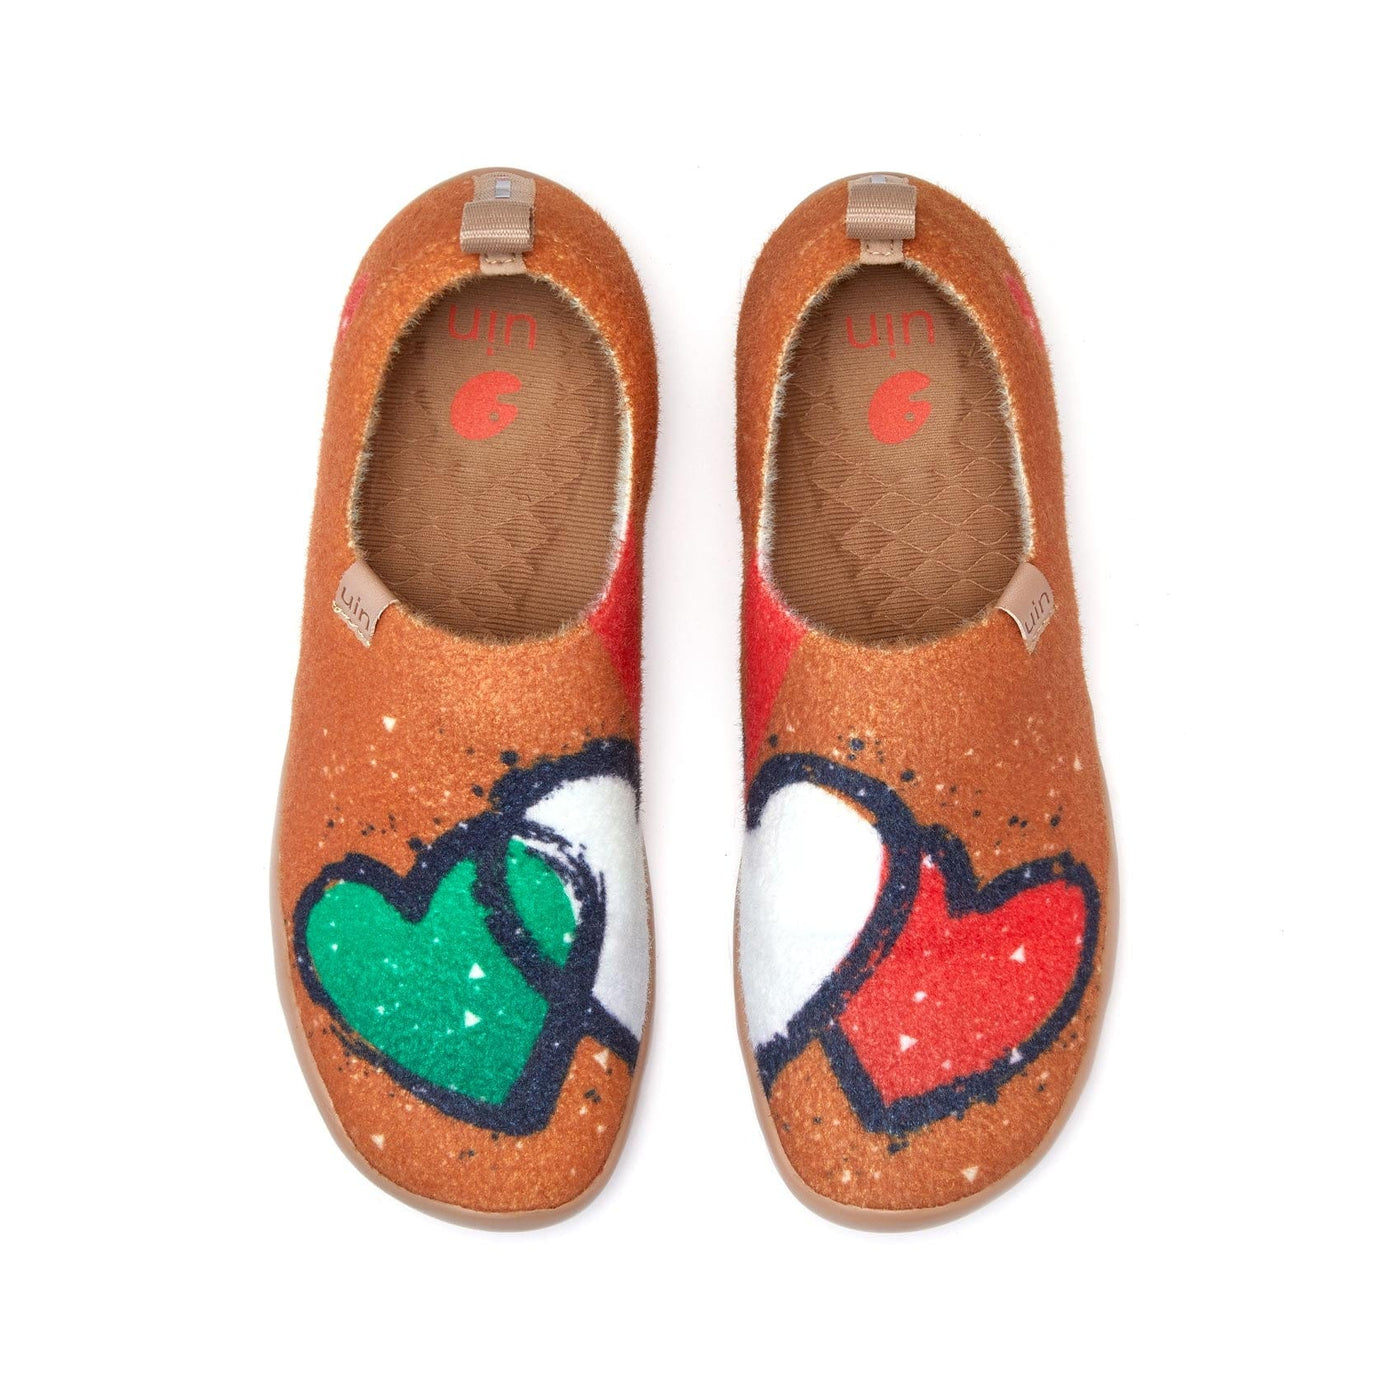 UIN Footwear Women Italy·Love Toledo I Women Canvas loafers